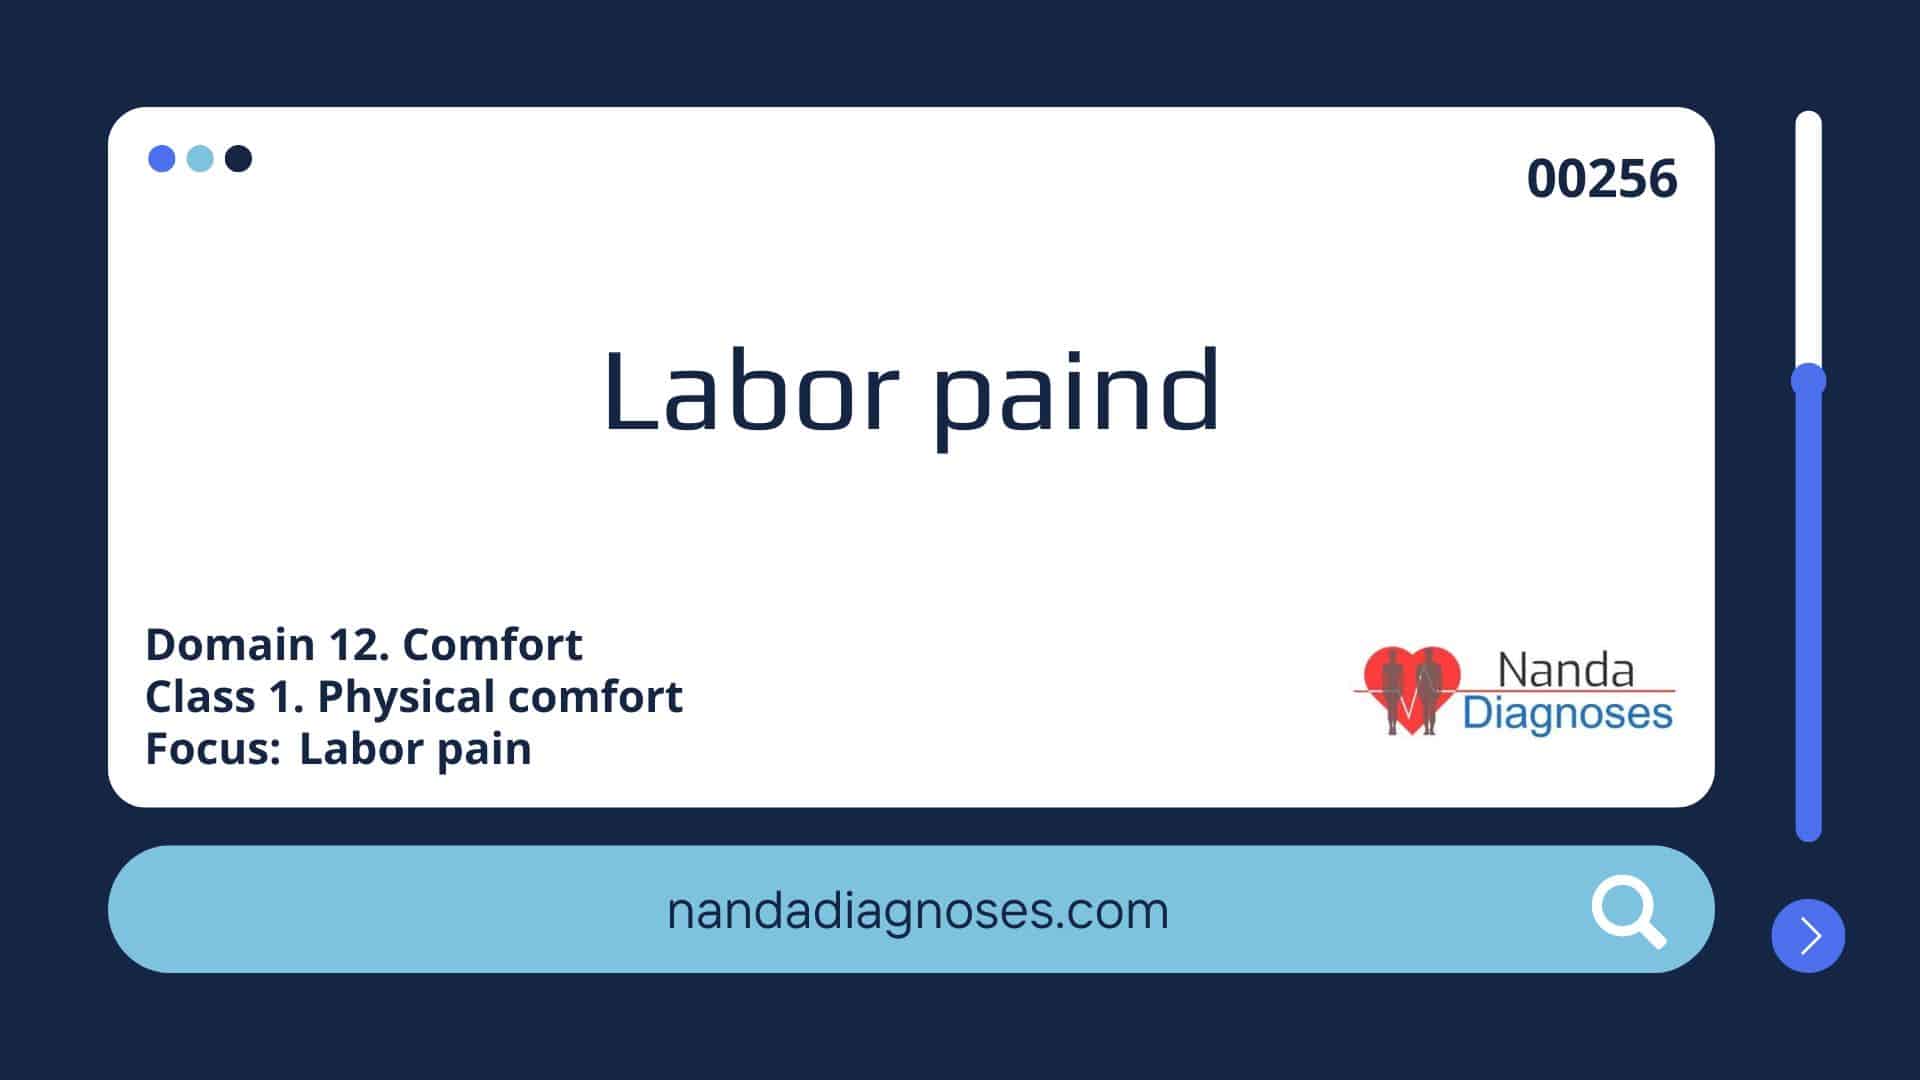 Nursing diagnosis Labor paind